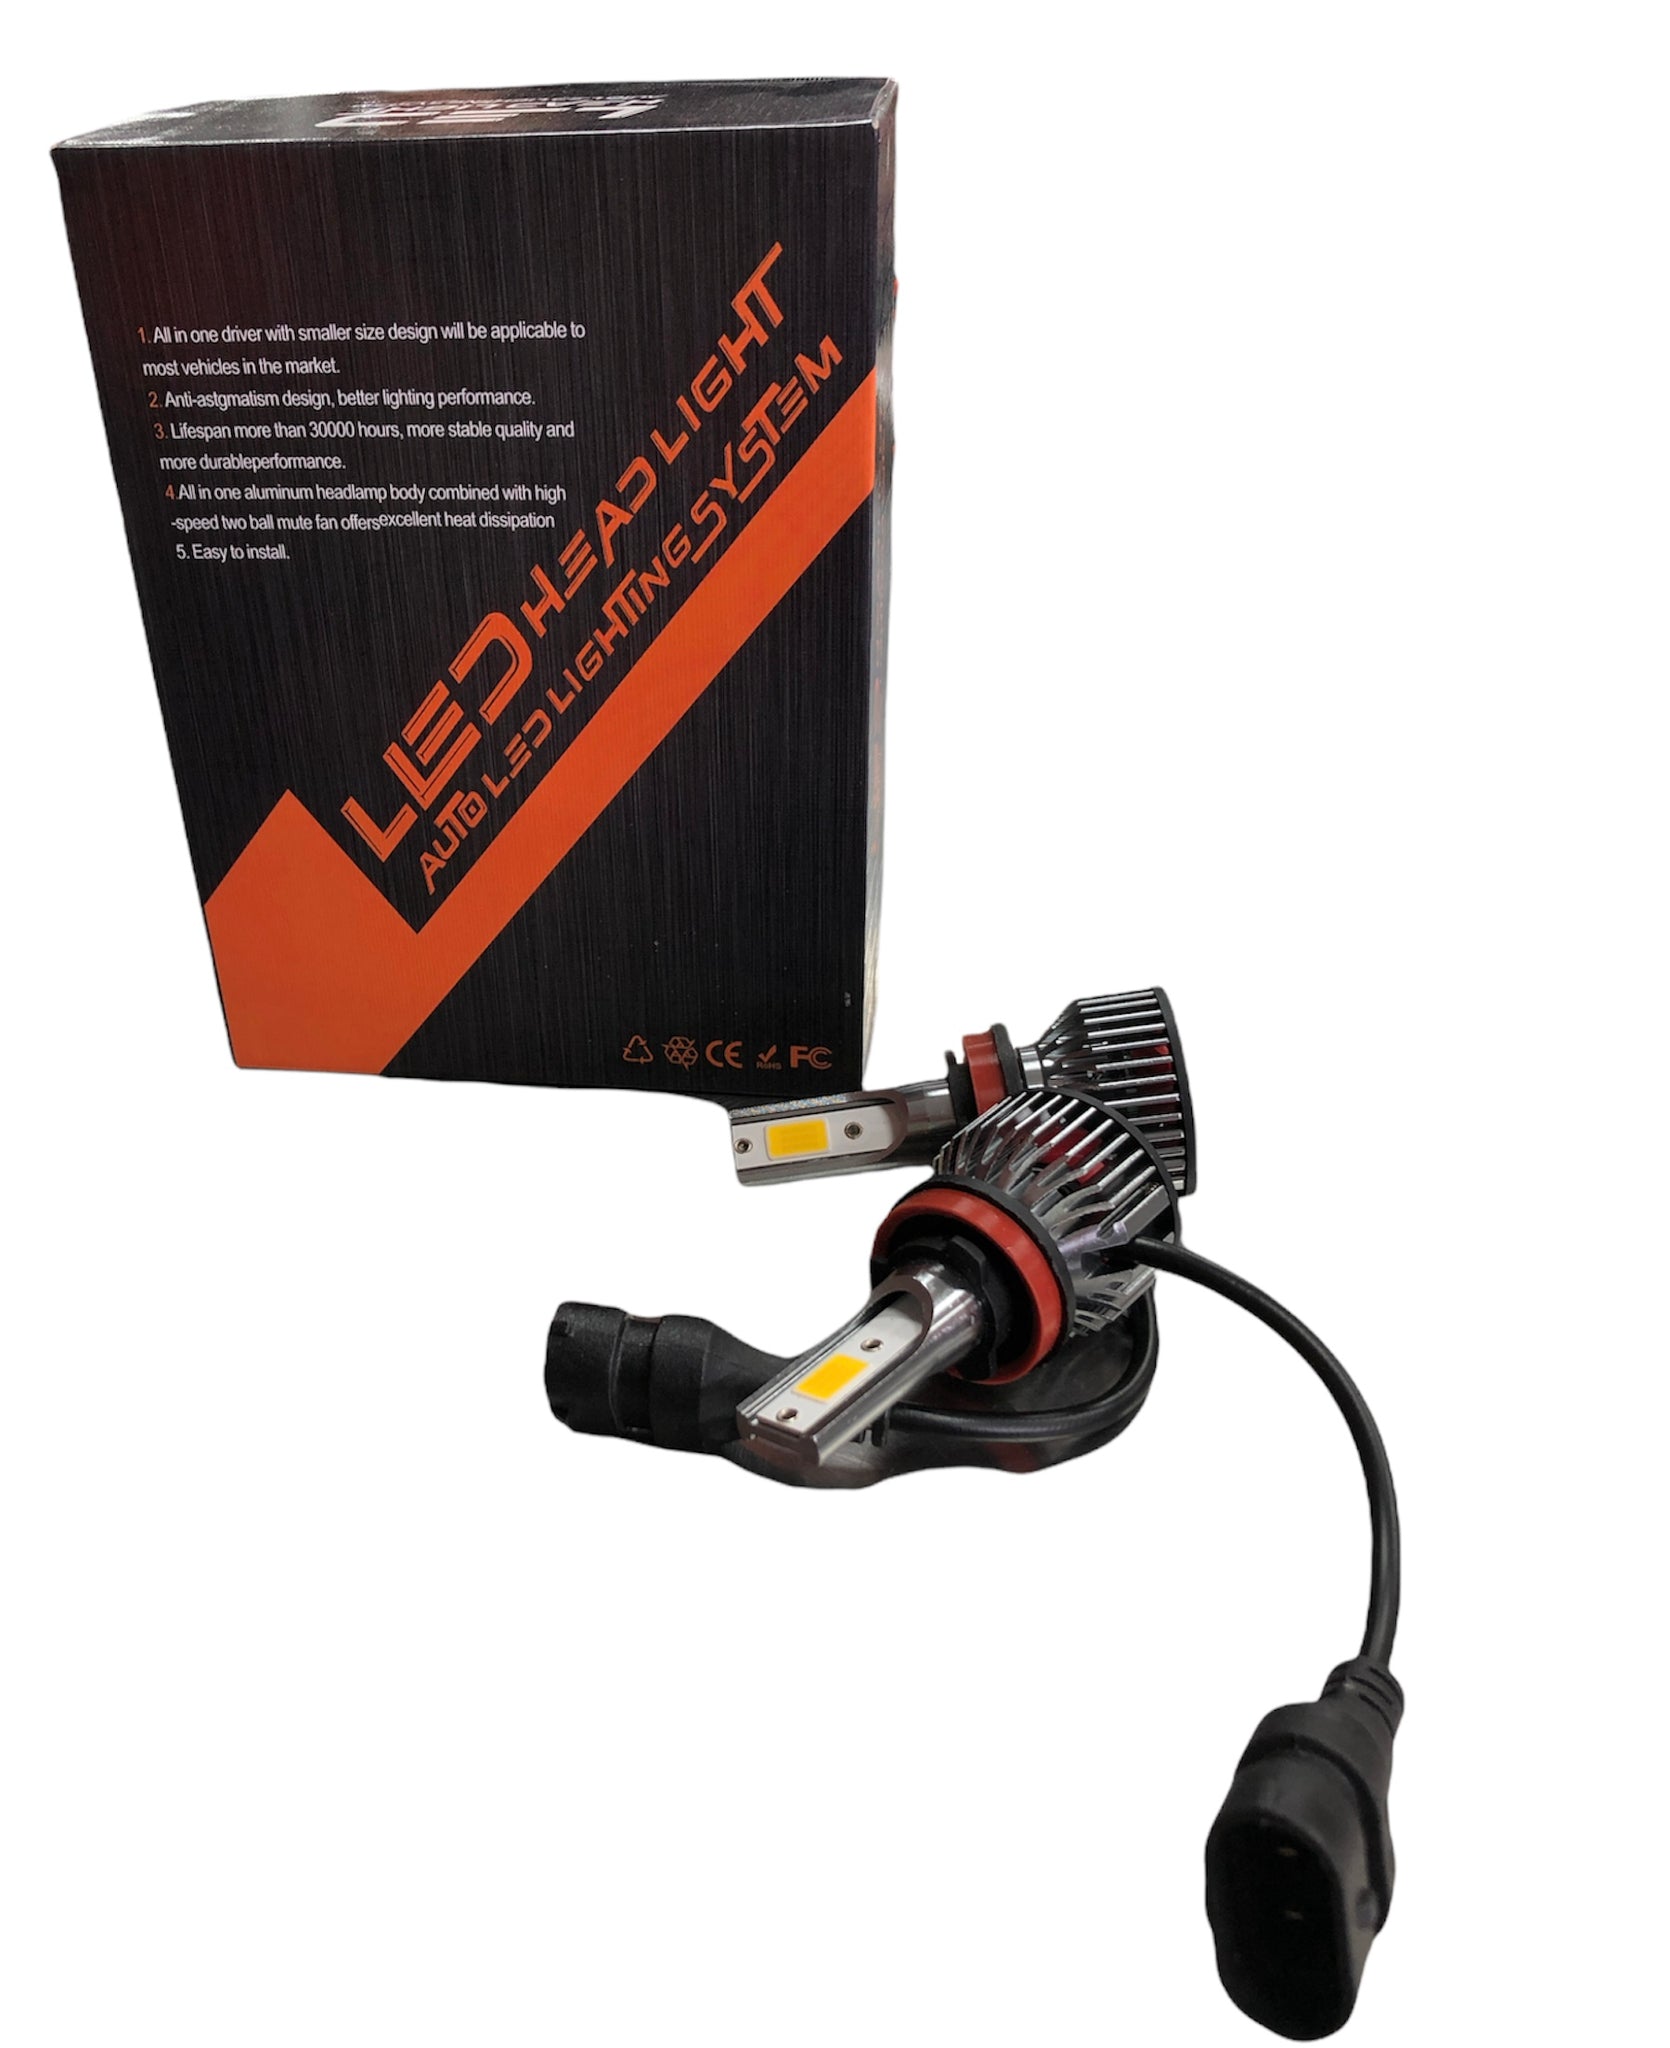 Mathis Adición Ejecutable LUZ LED HEADLIGHT COLOR CALIDO 4300K-H11 – Autoaccesorioselchinito.com